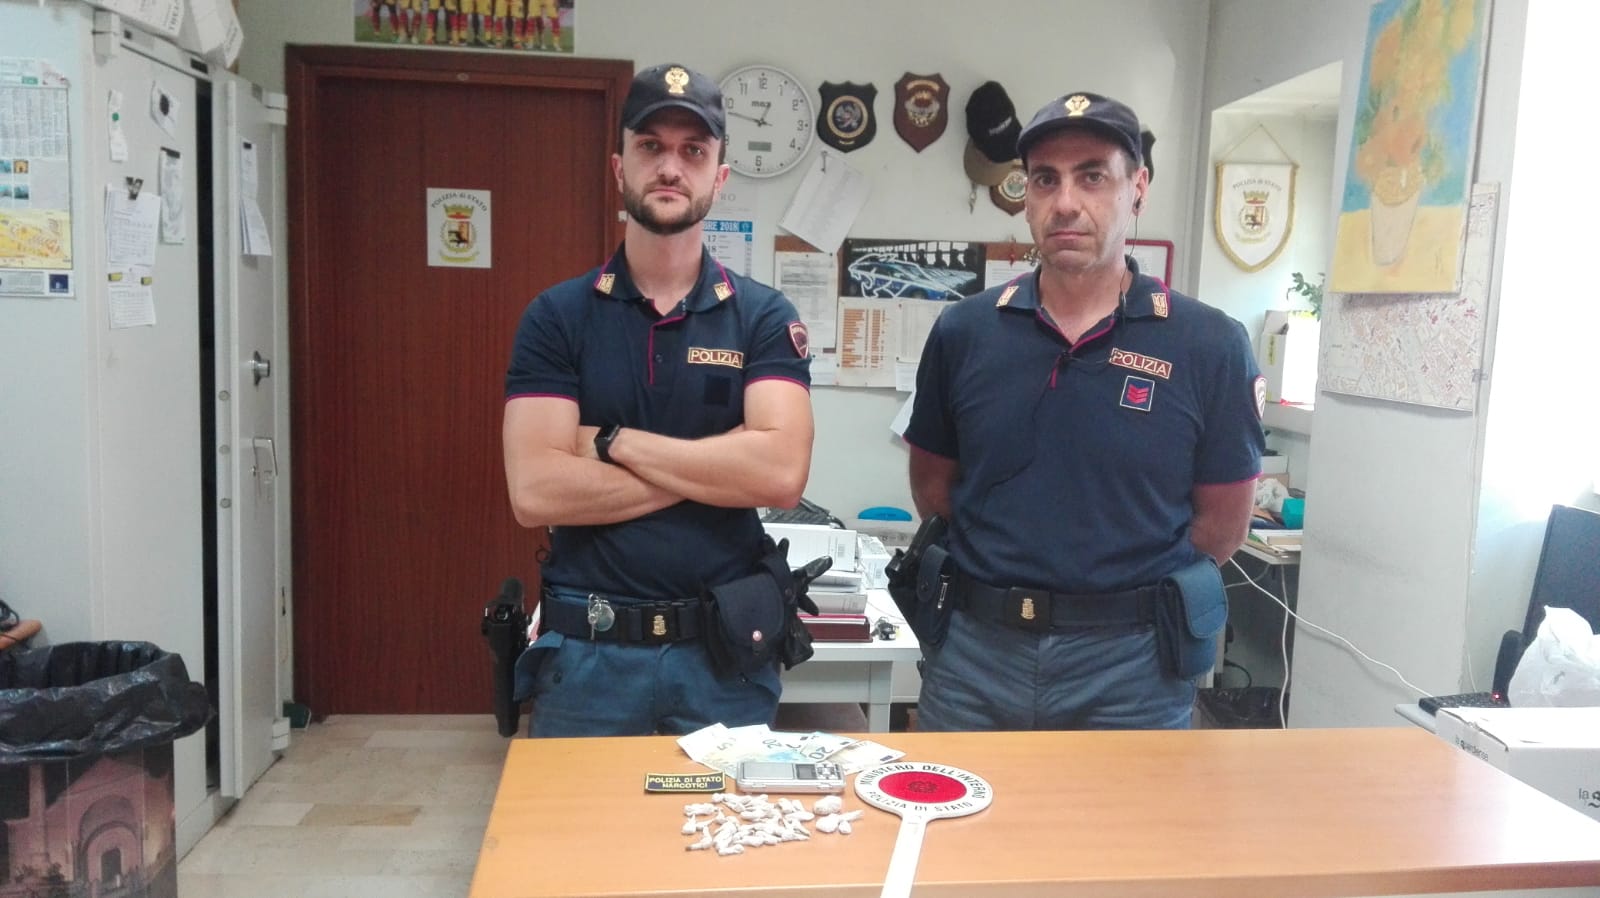 Benevento| Droga nel deposito del bar: tre persone arrestate dalla Polizia